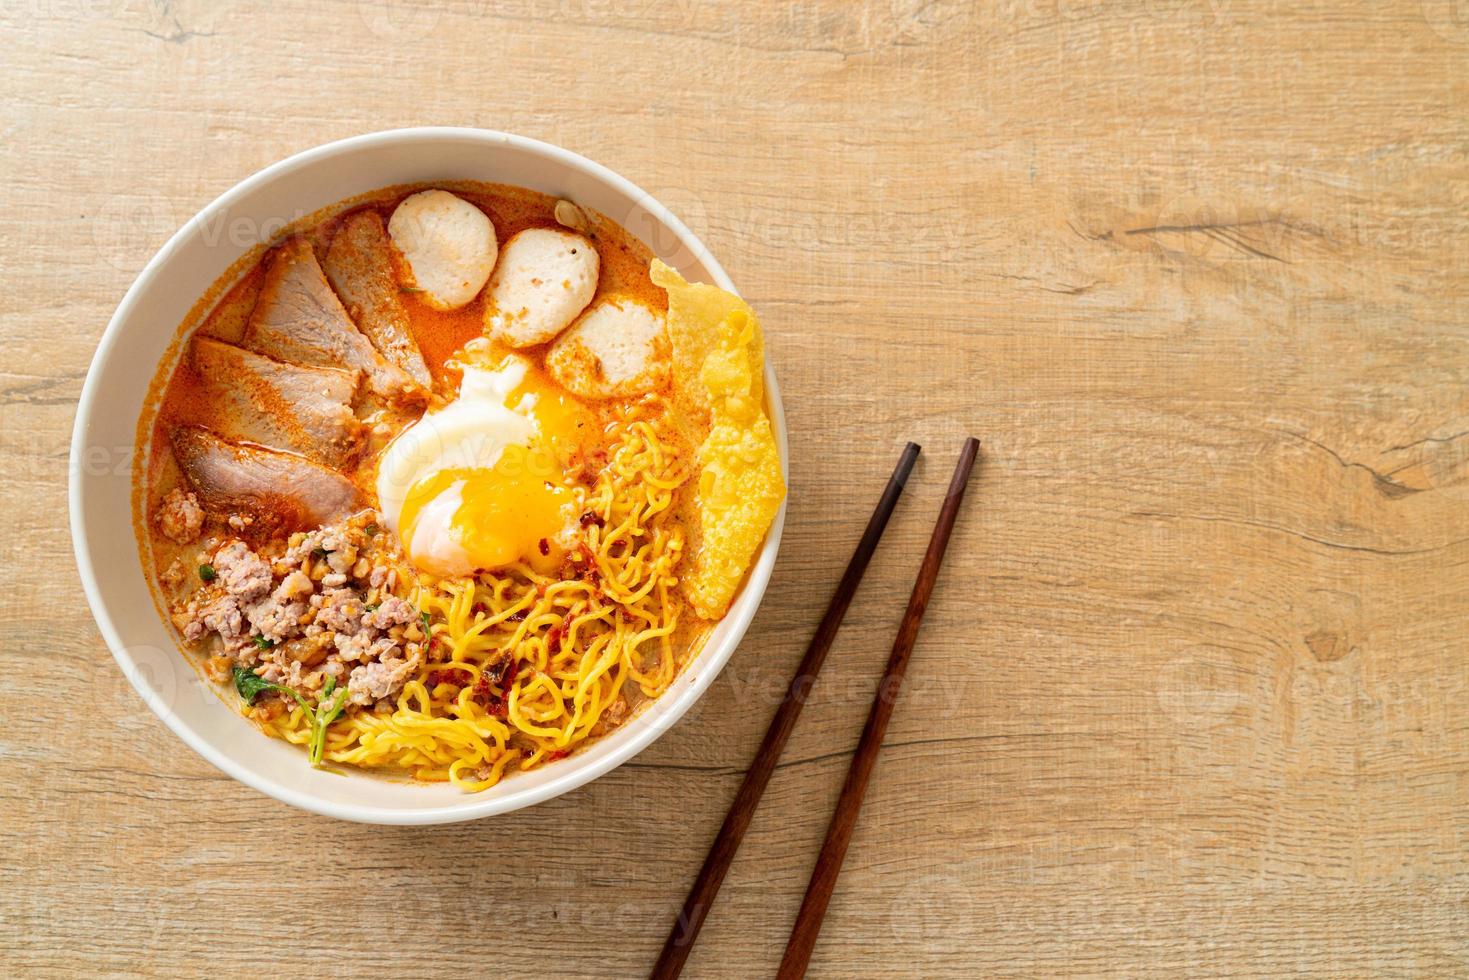 nouilles aux œufs avec porc et boulettes de viande dans une soupe épicée ou nouilles tom yum à l'asiatique photo